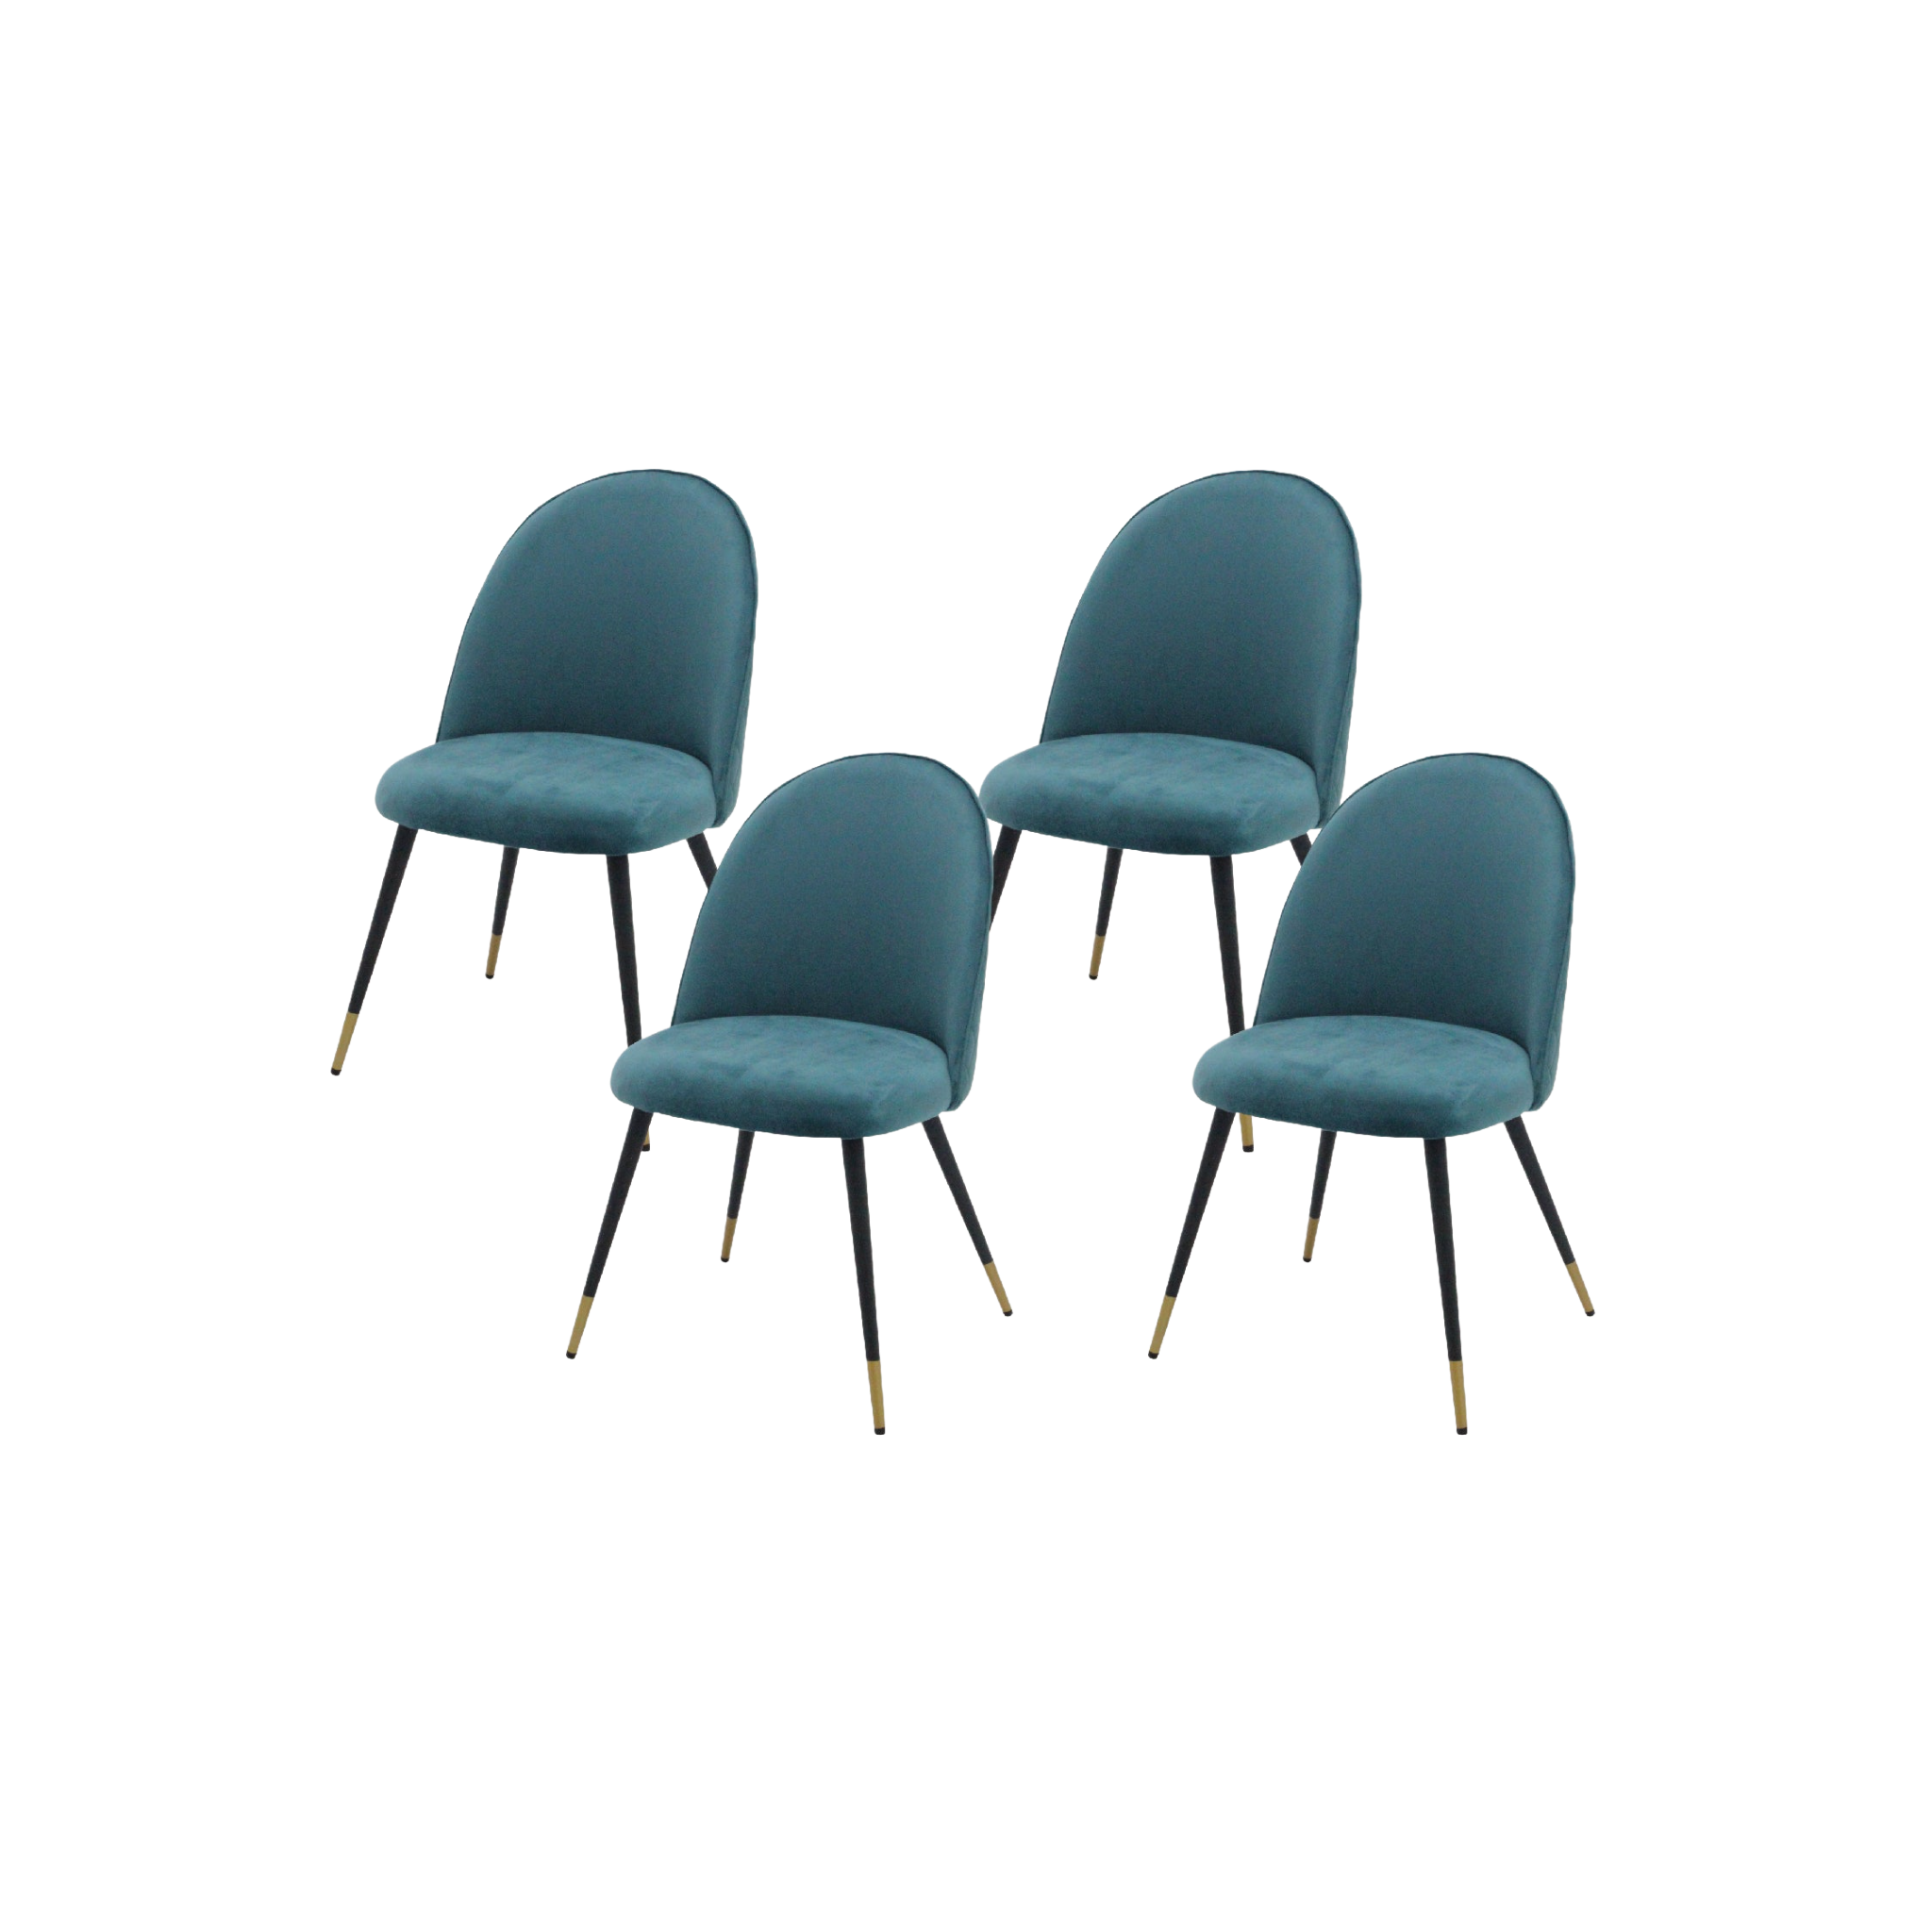 เซ็ตเก้าอี้ 4 ตัว รุ่น Lisala สีเขียว01